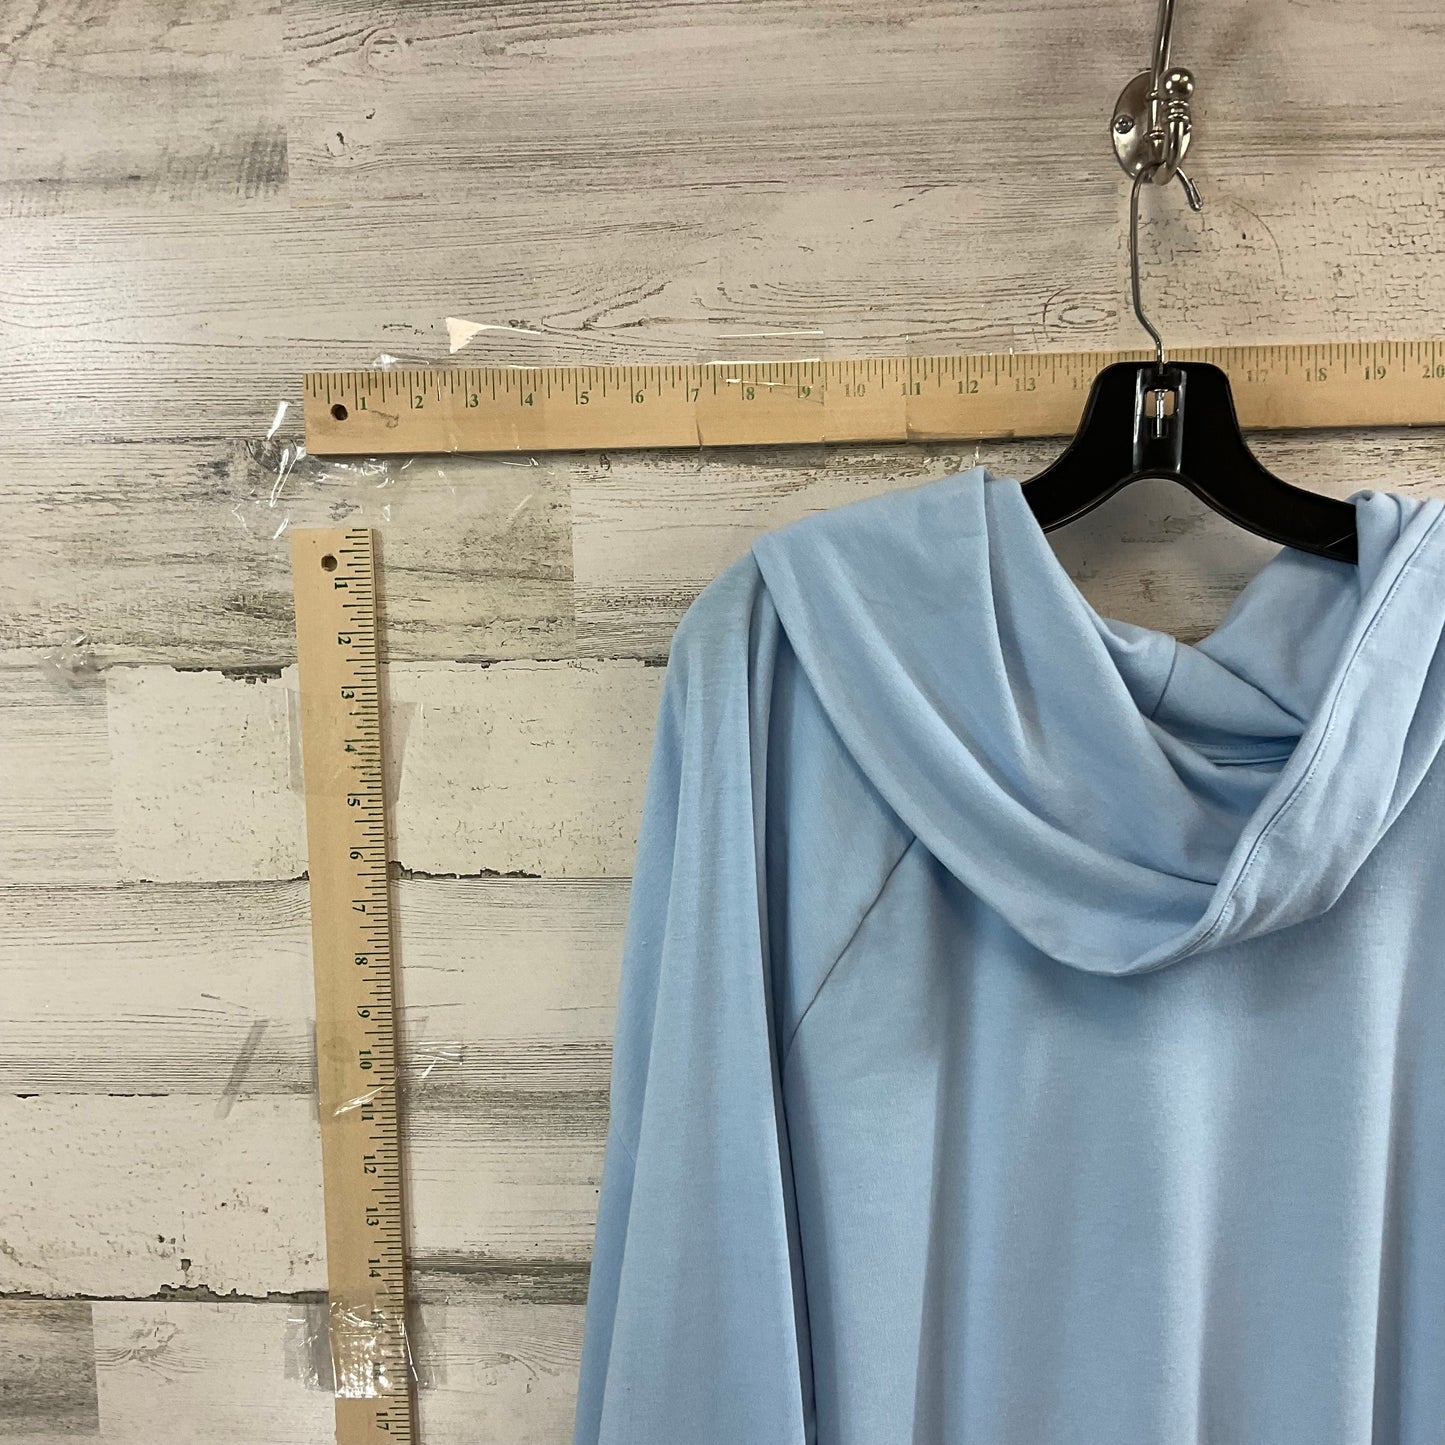 Blue Top Long Sleeve Karen Scott, Size 4x